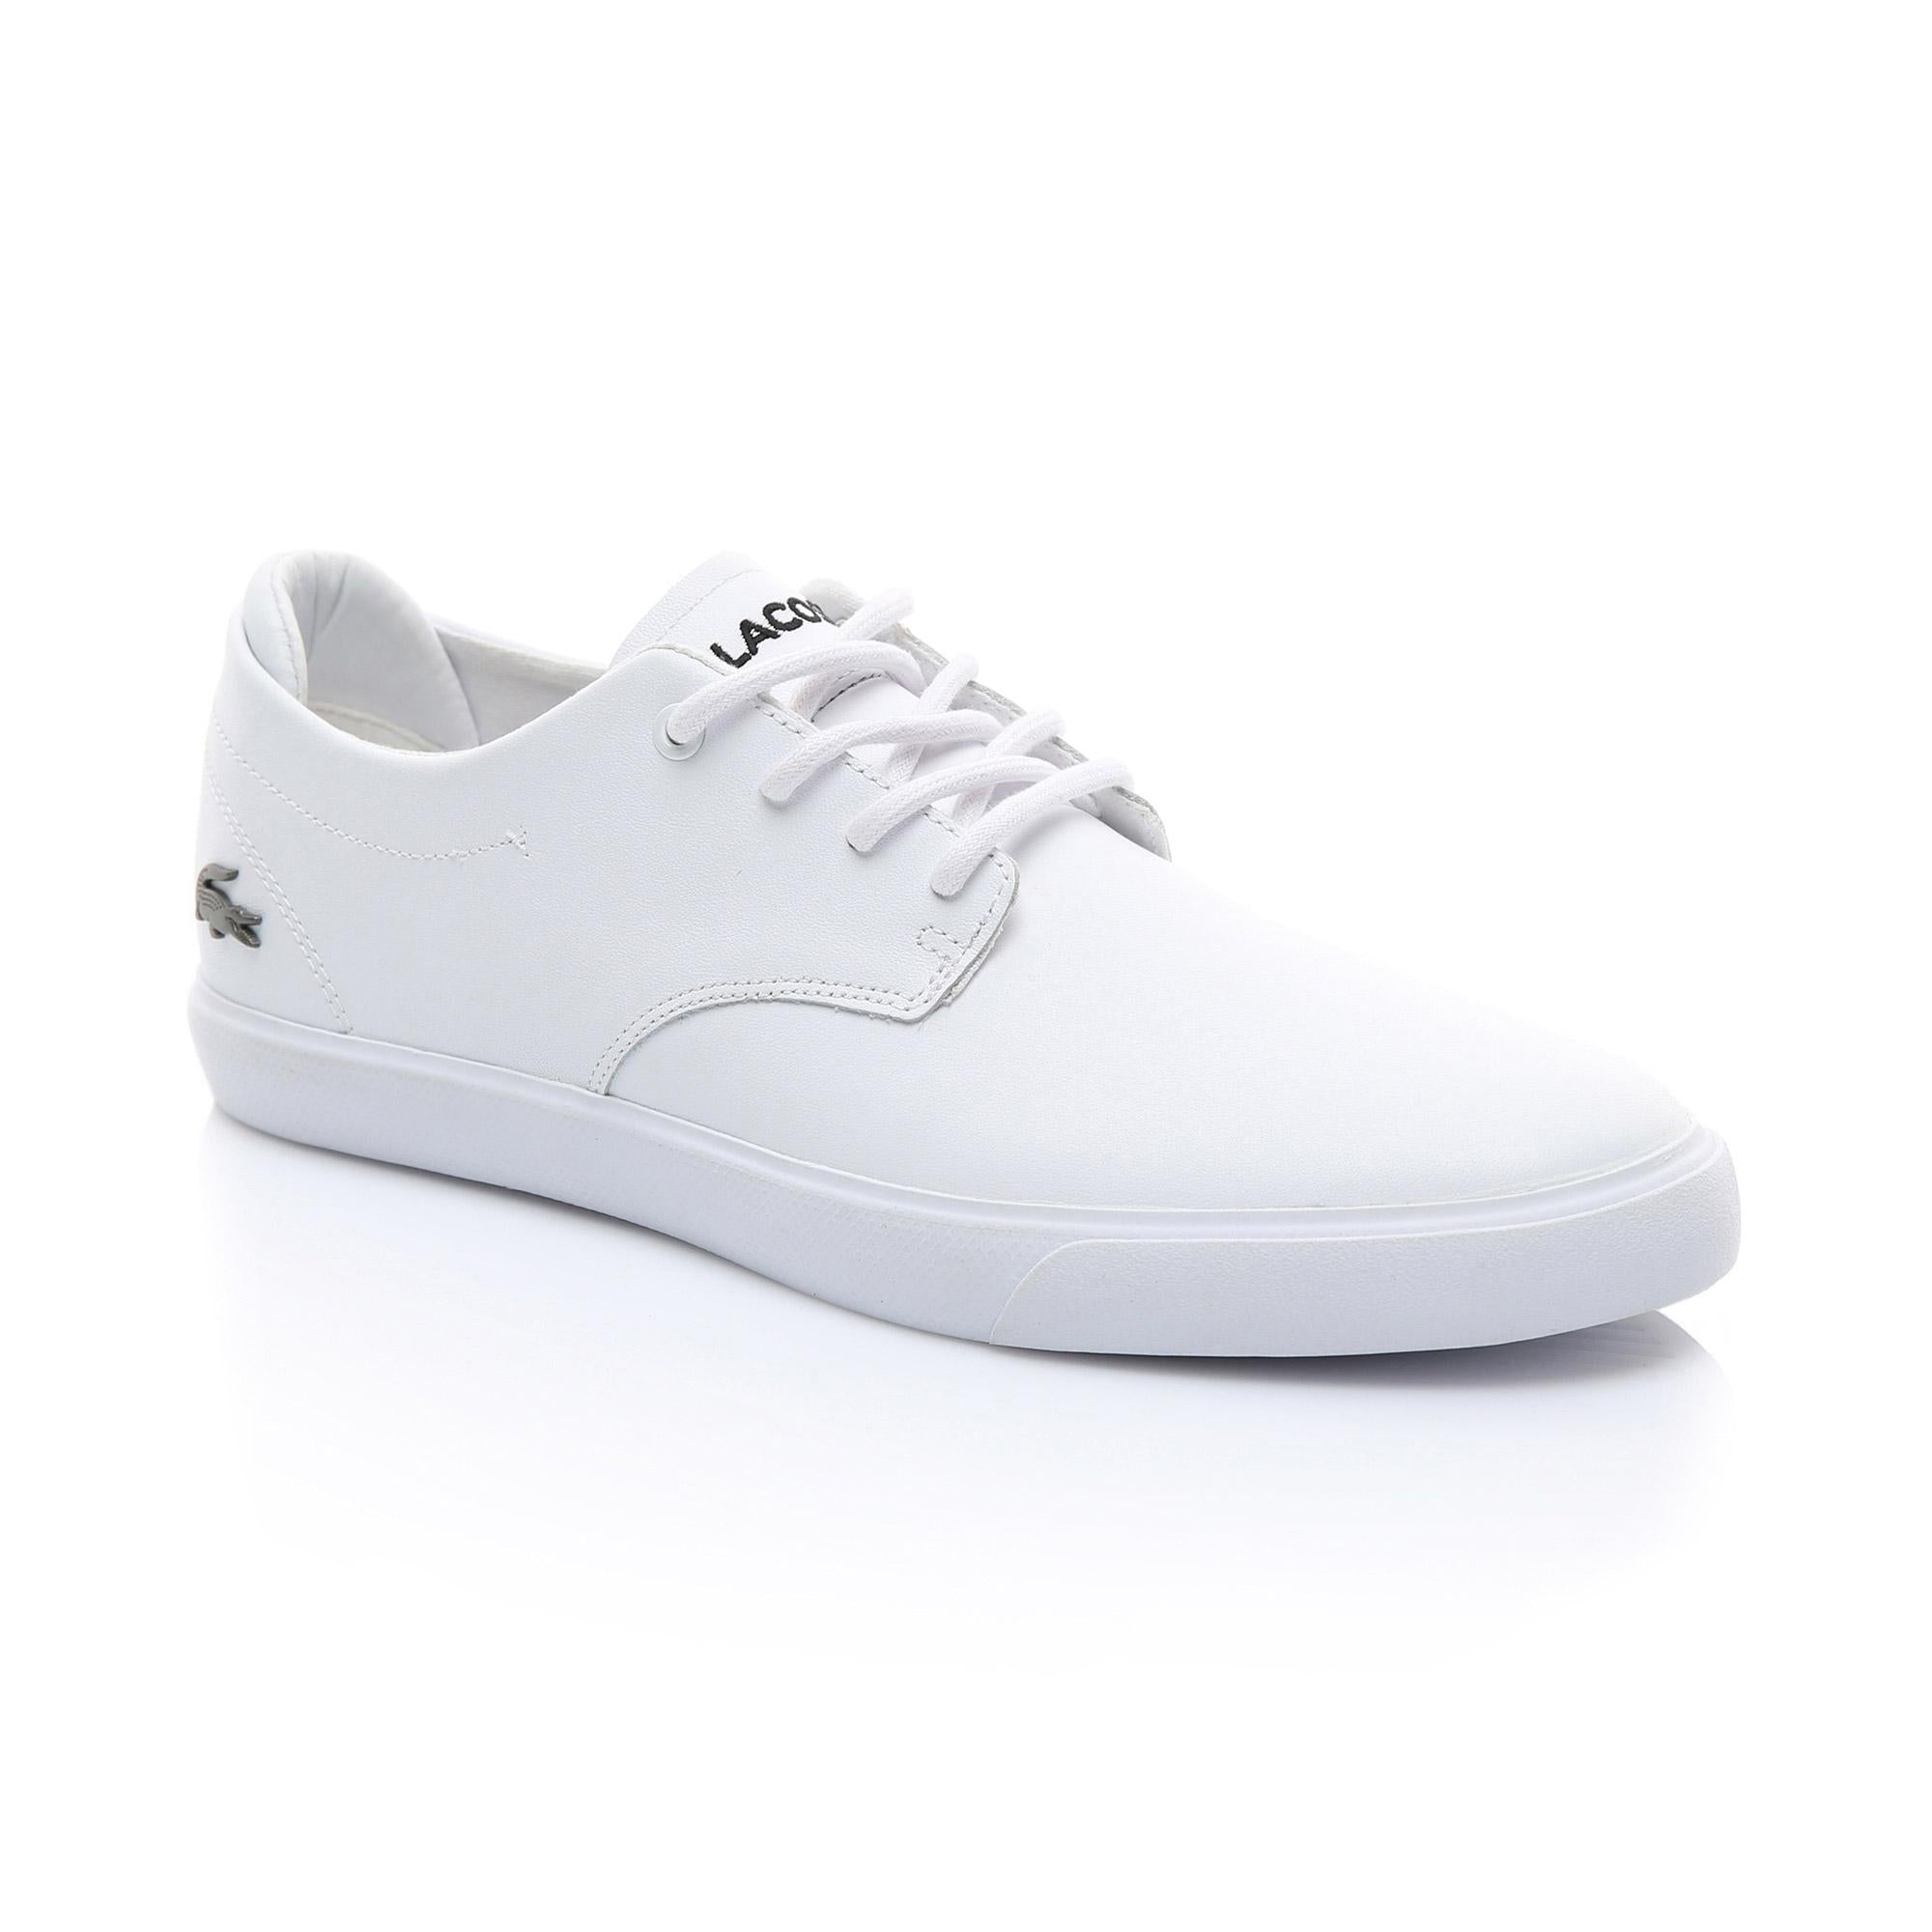 men's lacoste shoes white